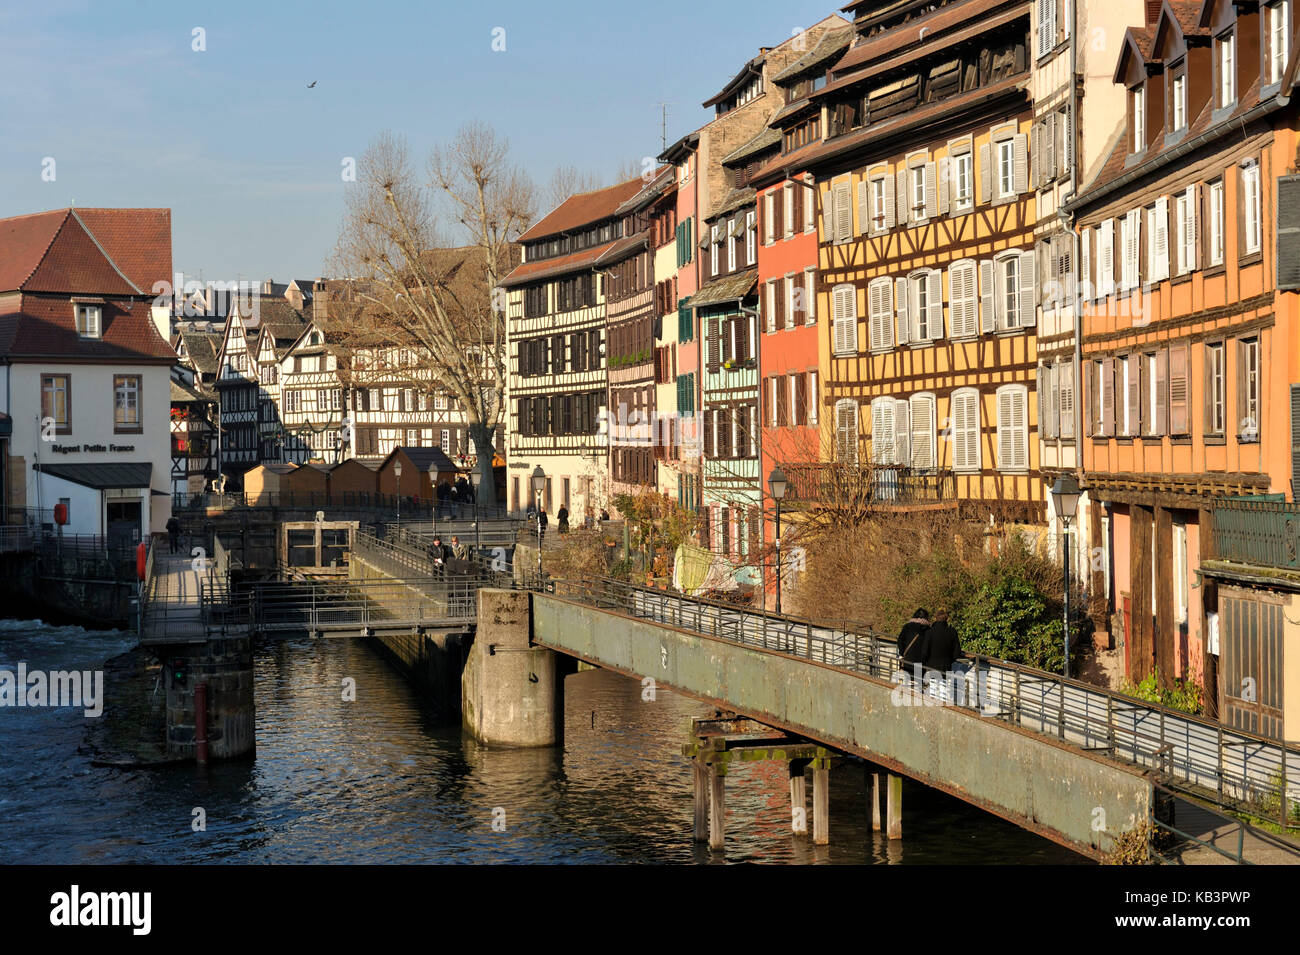 Frankreich, Bas Rhin, Straßburg, Altstadt als Weltkulturerbe von der unesco, Petite France aufgelistet, die auf der Ill in Richtung des Quai des Moulins Stockfoto